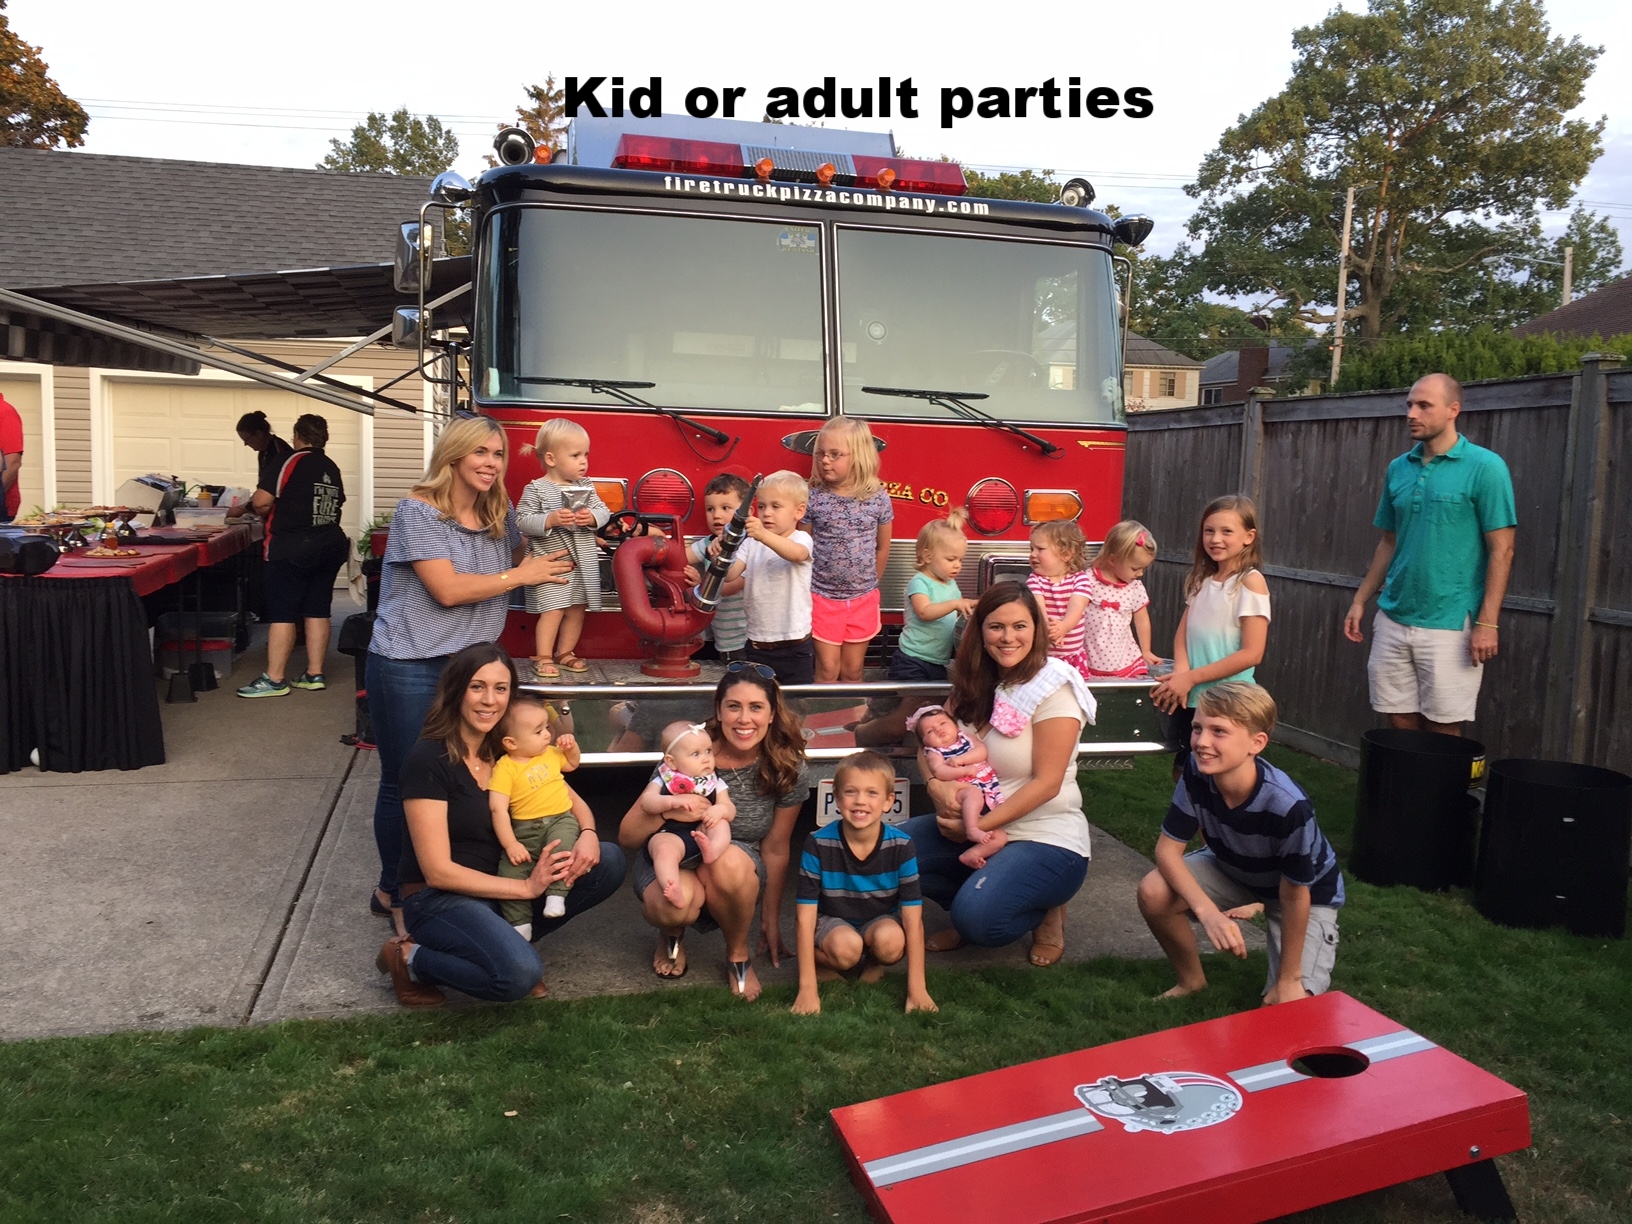 Adult or kid parties